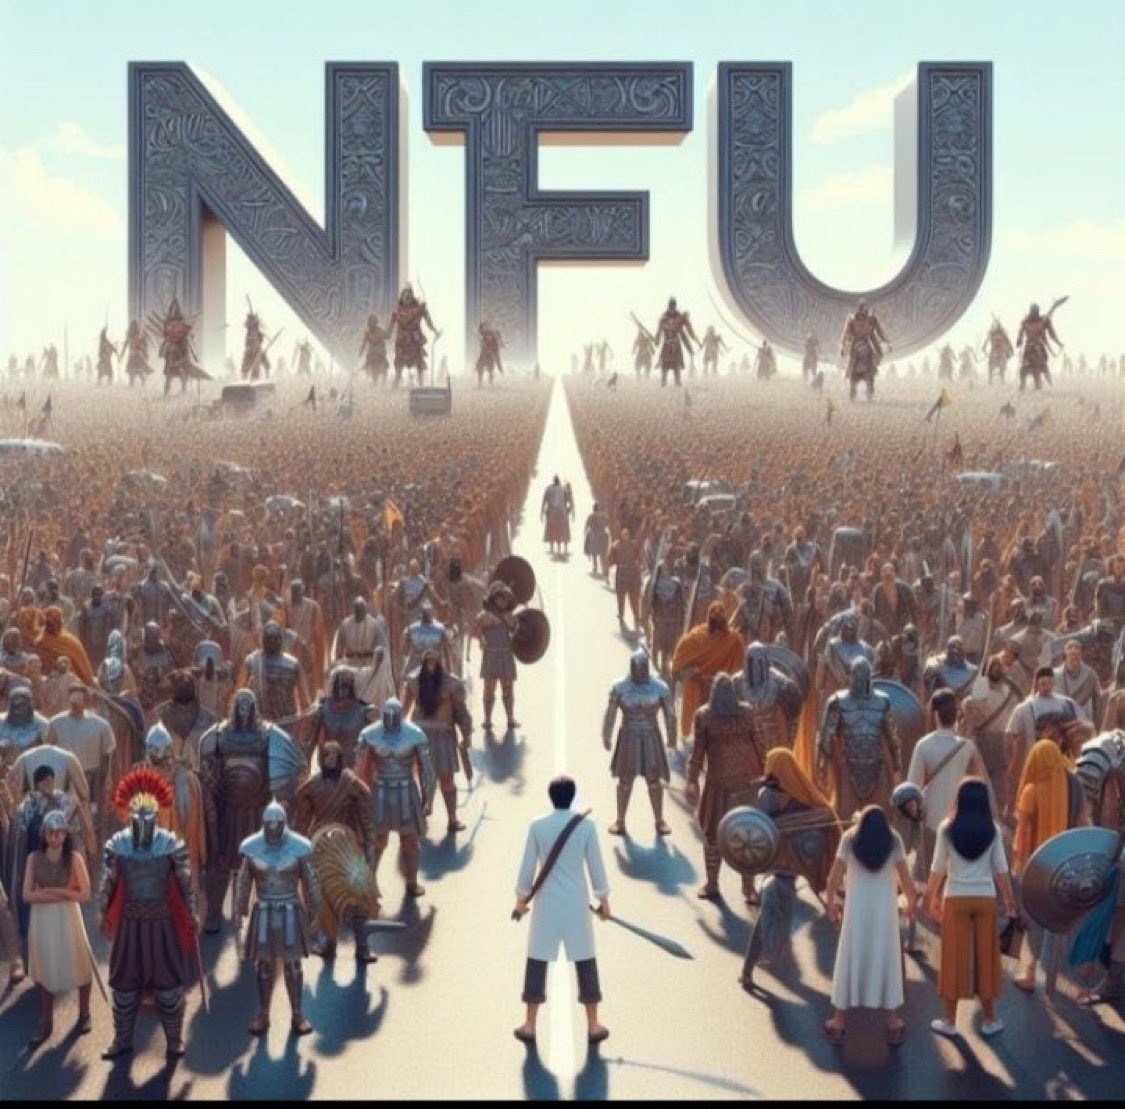 संडे स्पेशल प्रोग्राम में आपका स्वागत है🤗 @NFUofficial1 के सदस्यों को हर रविवार आपस में जोड़ने का कार्यक्रम रहता है 🔁 इस पोस्ट को #रिट्वीट करें और रिट्वीट करने वाले एक-दूसरे को #फॉलो कर लें। follow - @suru070 #National_freedom_union #नेशनल_फ्रीडम_यूनियन